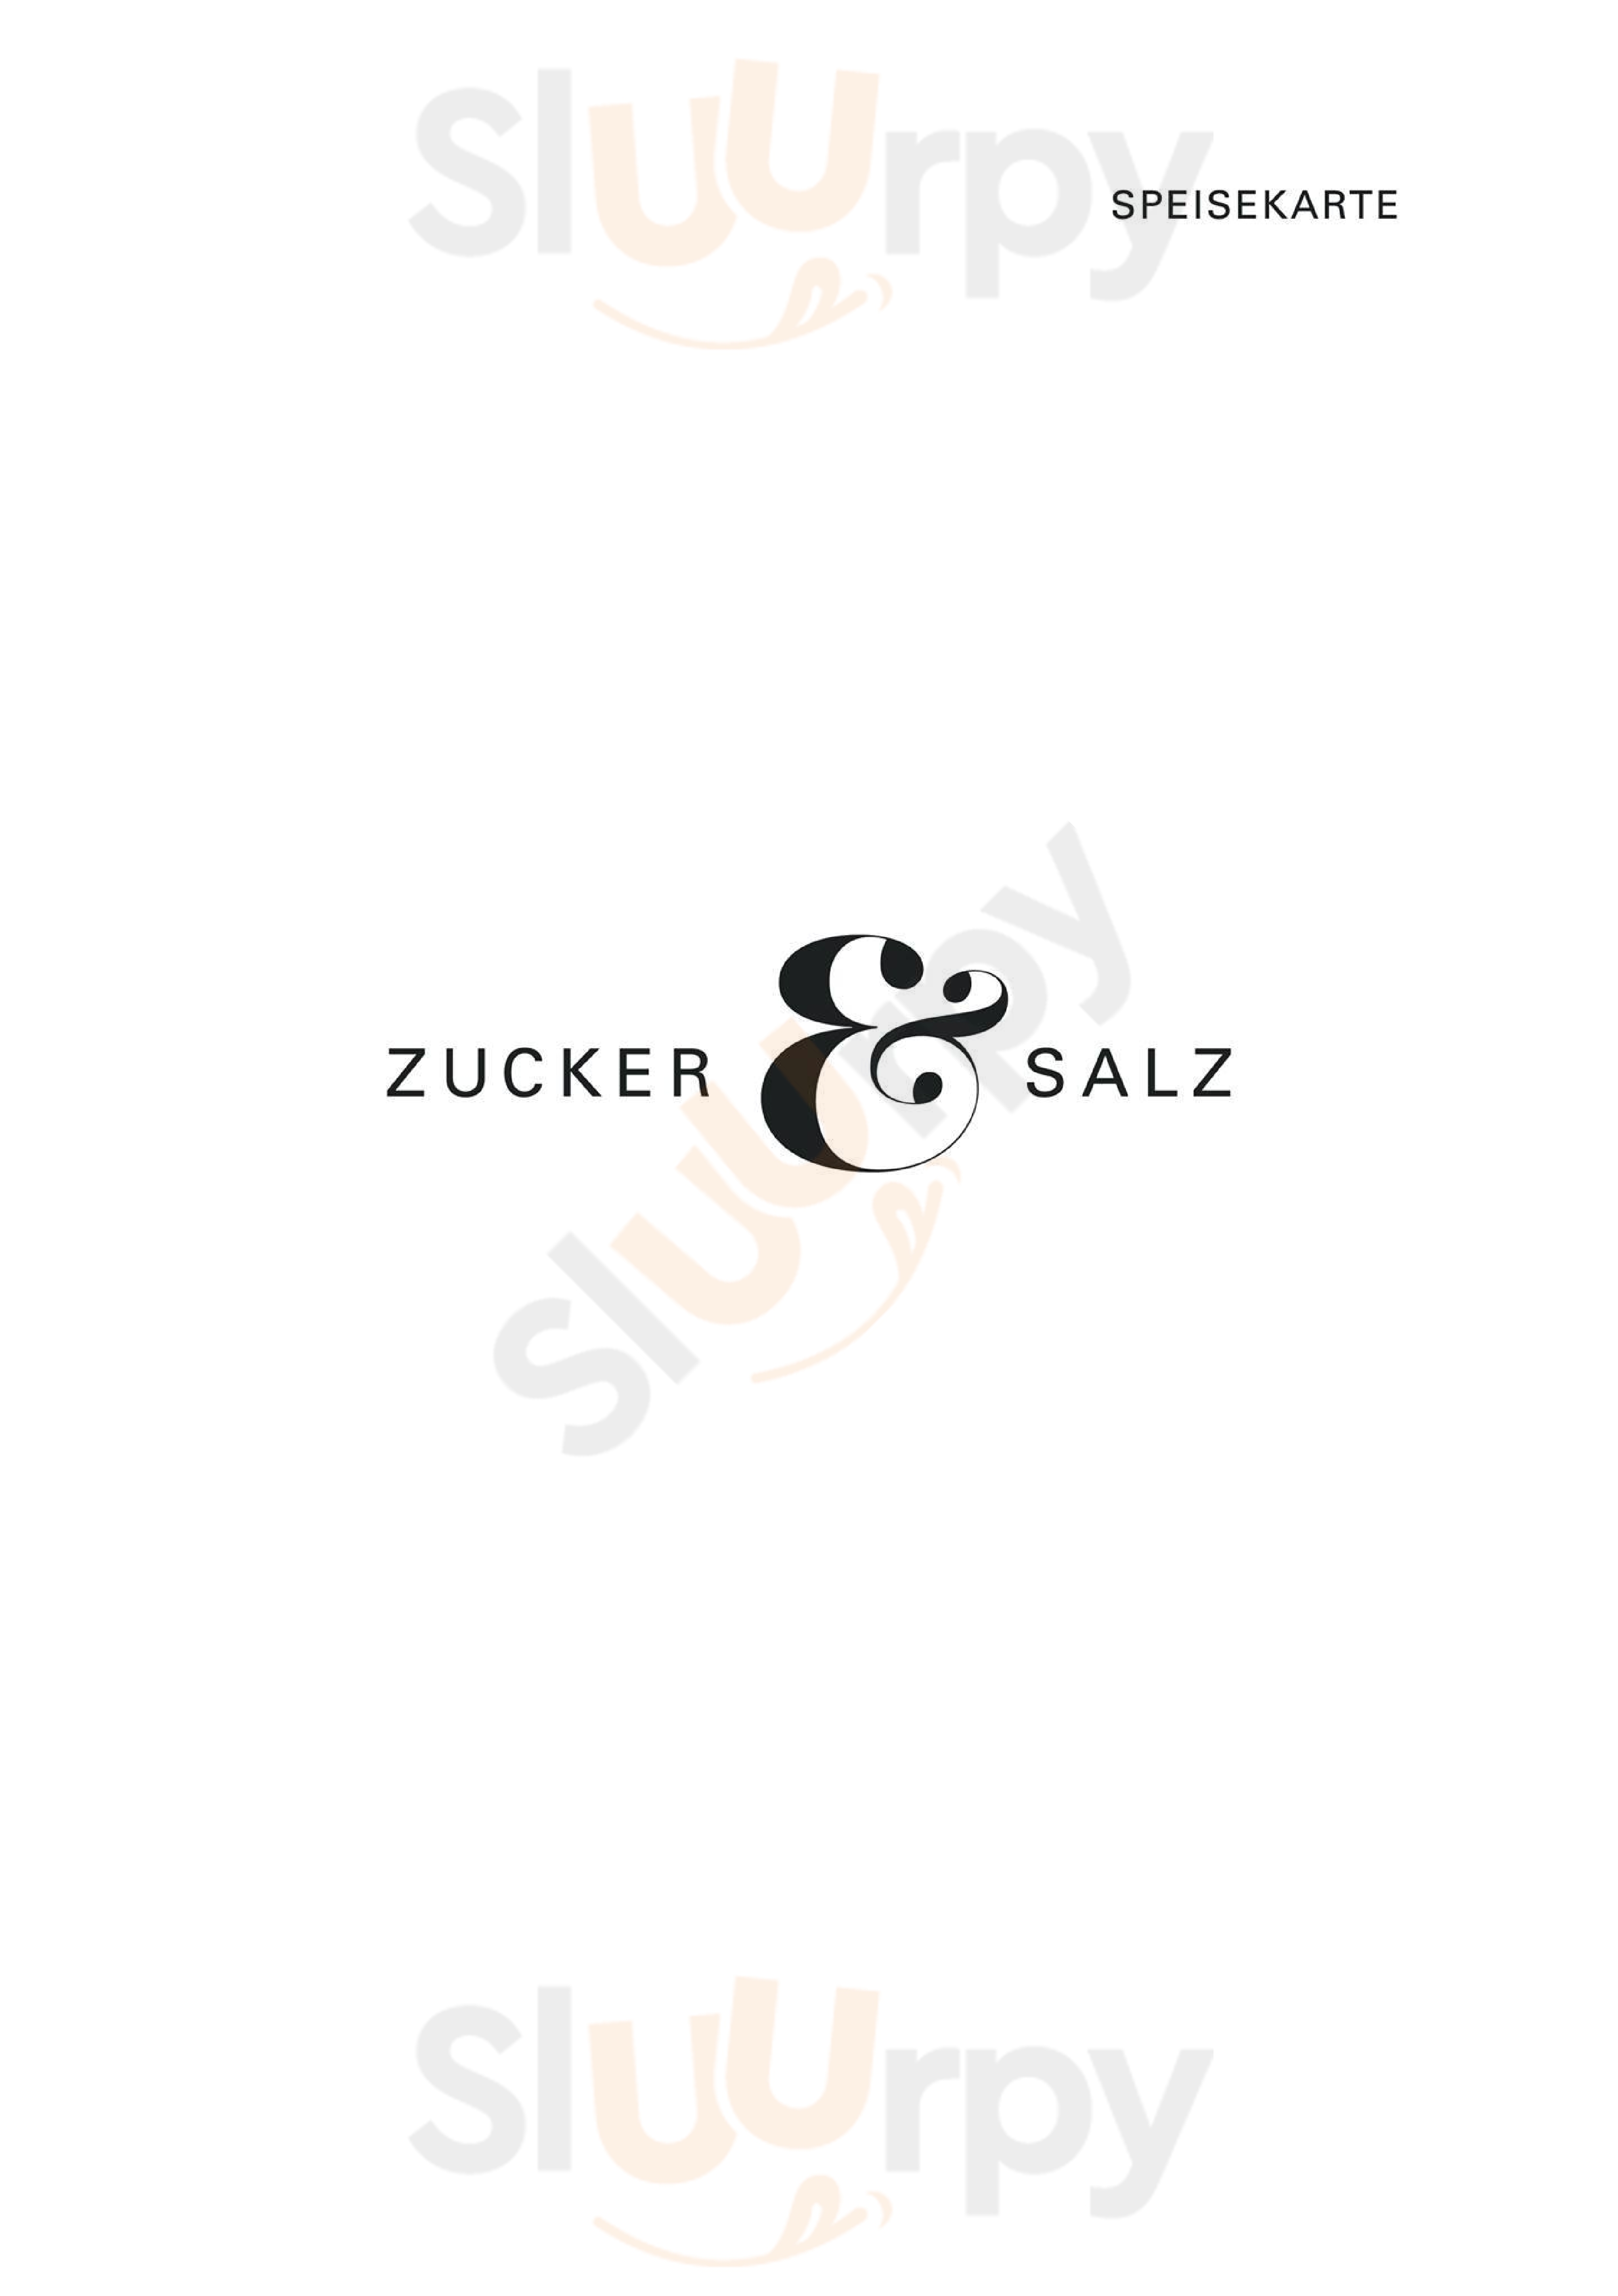 Zucker&salz Ulm Ulm Menu - 1